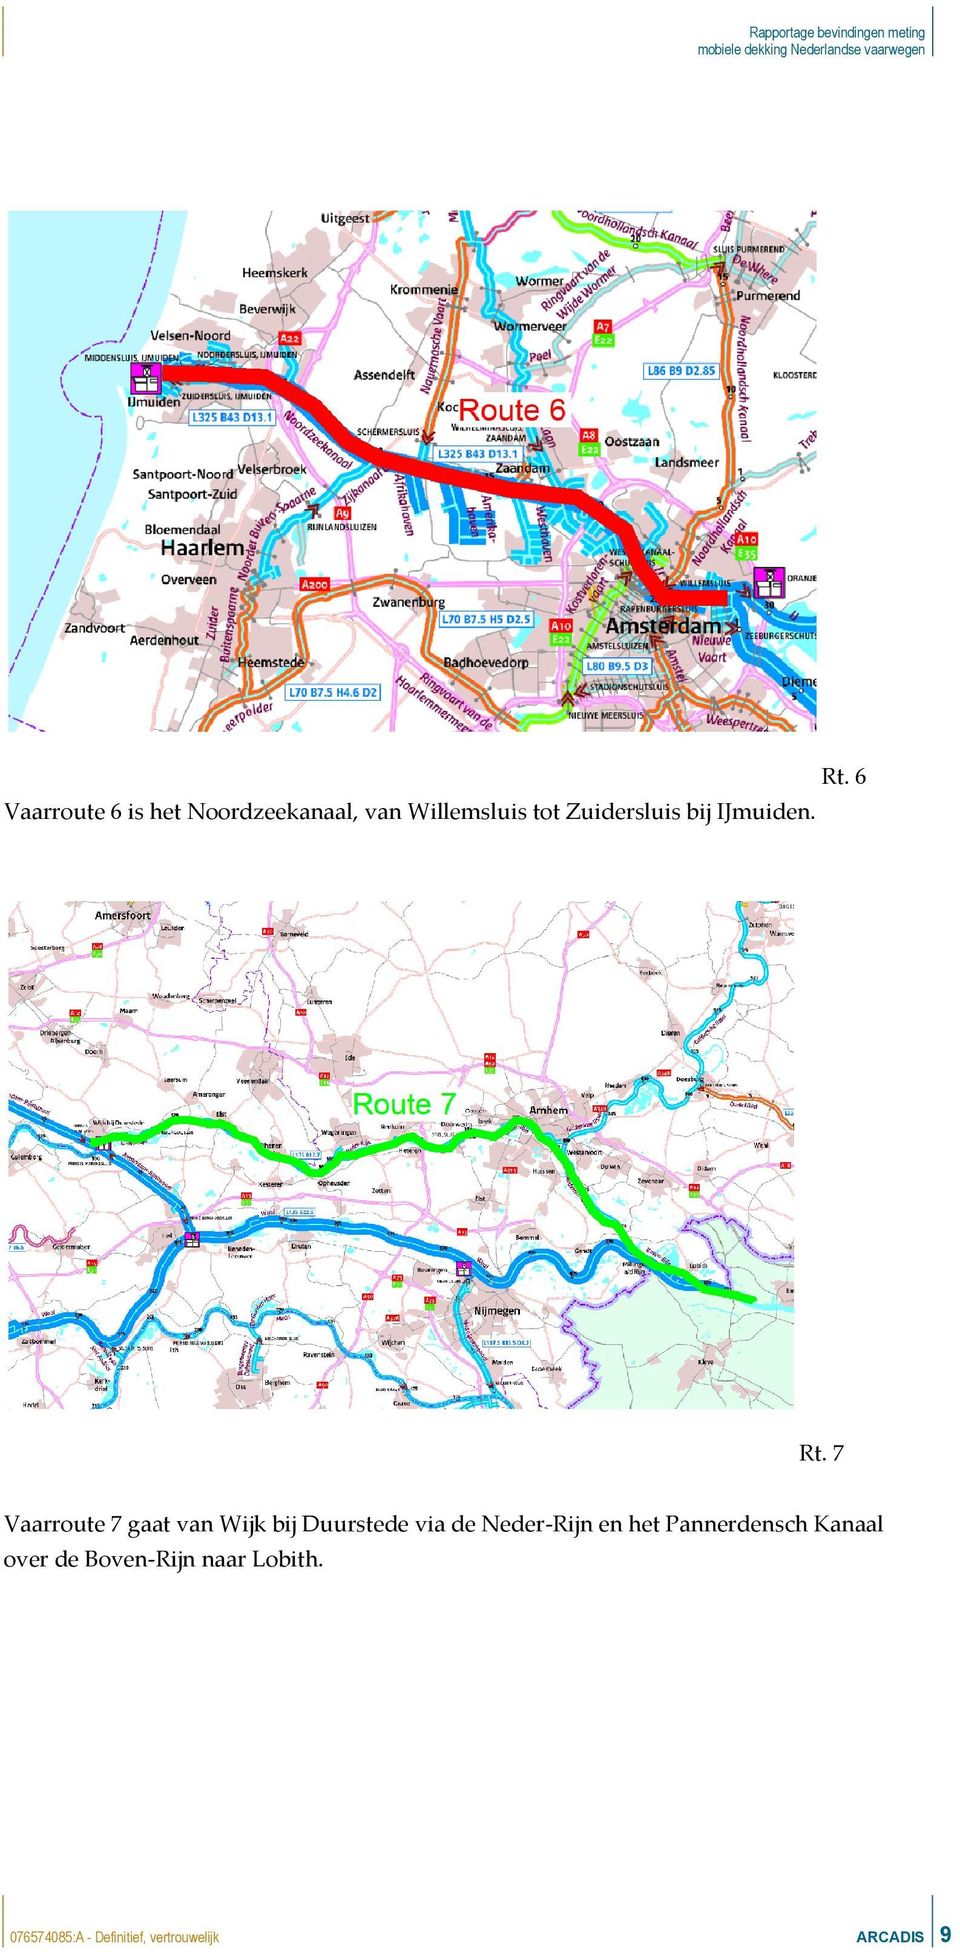 7 Vaarroute 7 gaat van Wijk bij Duurstede via de Neder-Rijn en